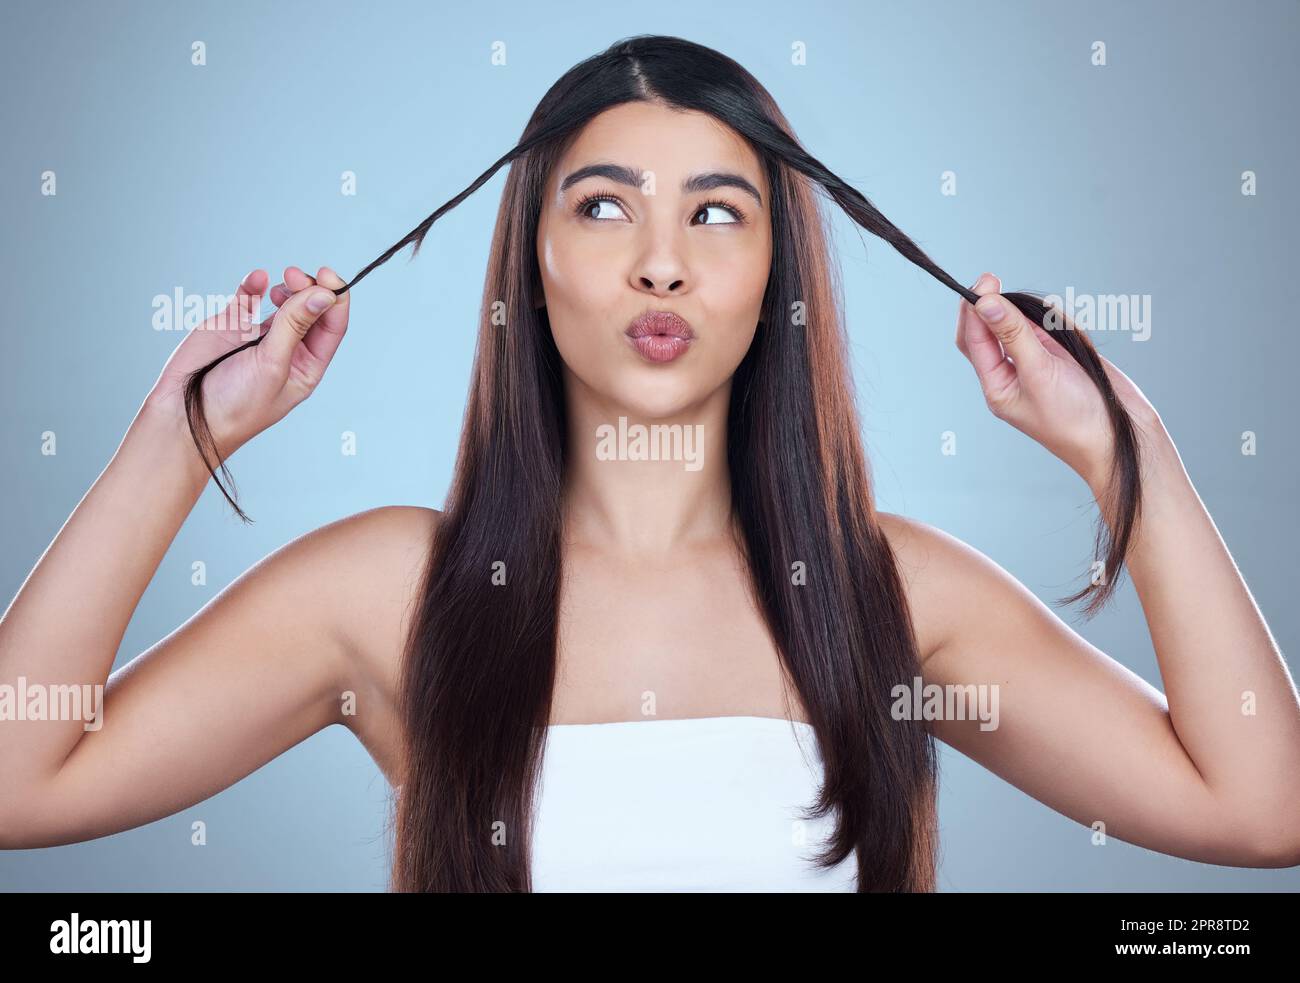 Nach oben oder unten. Studioaufnahme einer schönen jungen Frau, die ihr langes seidiges Haar vor blauem Hintergrund zeigt. Stockfoto